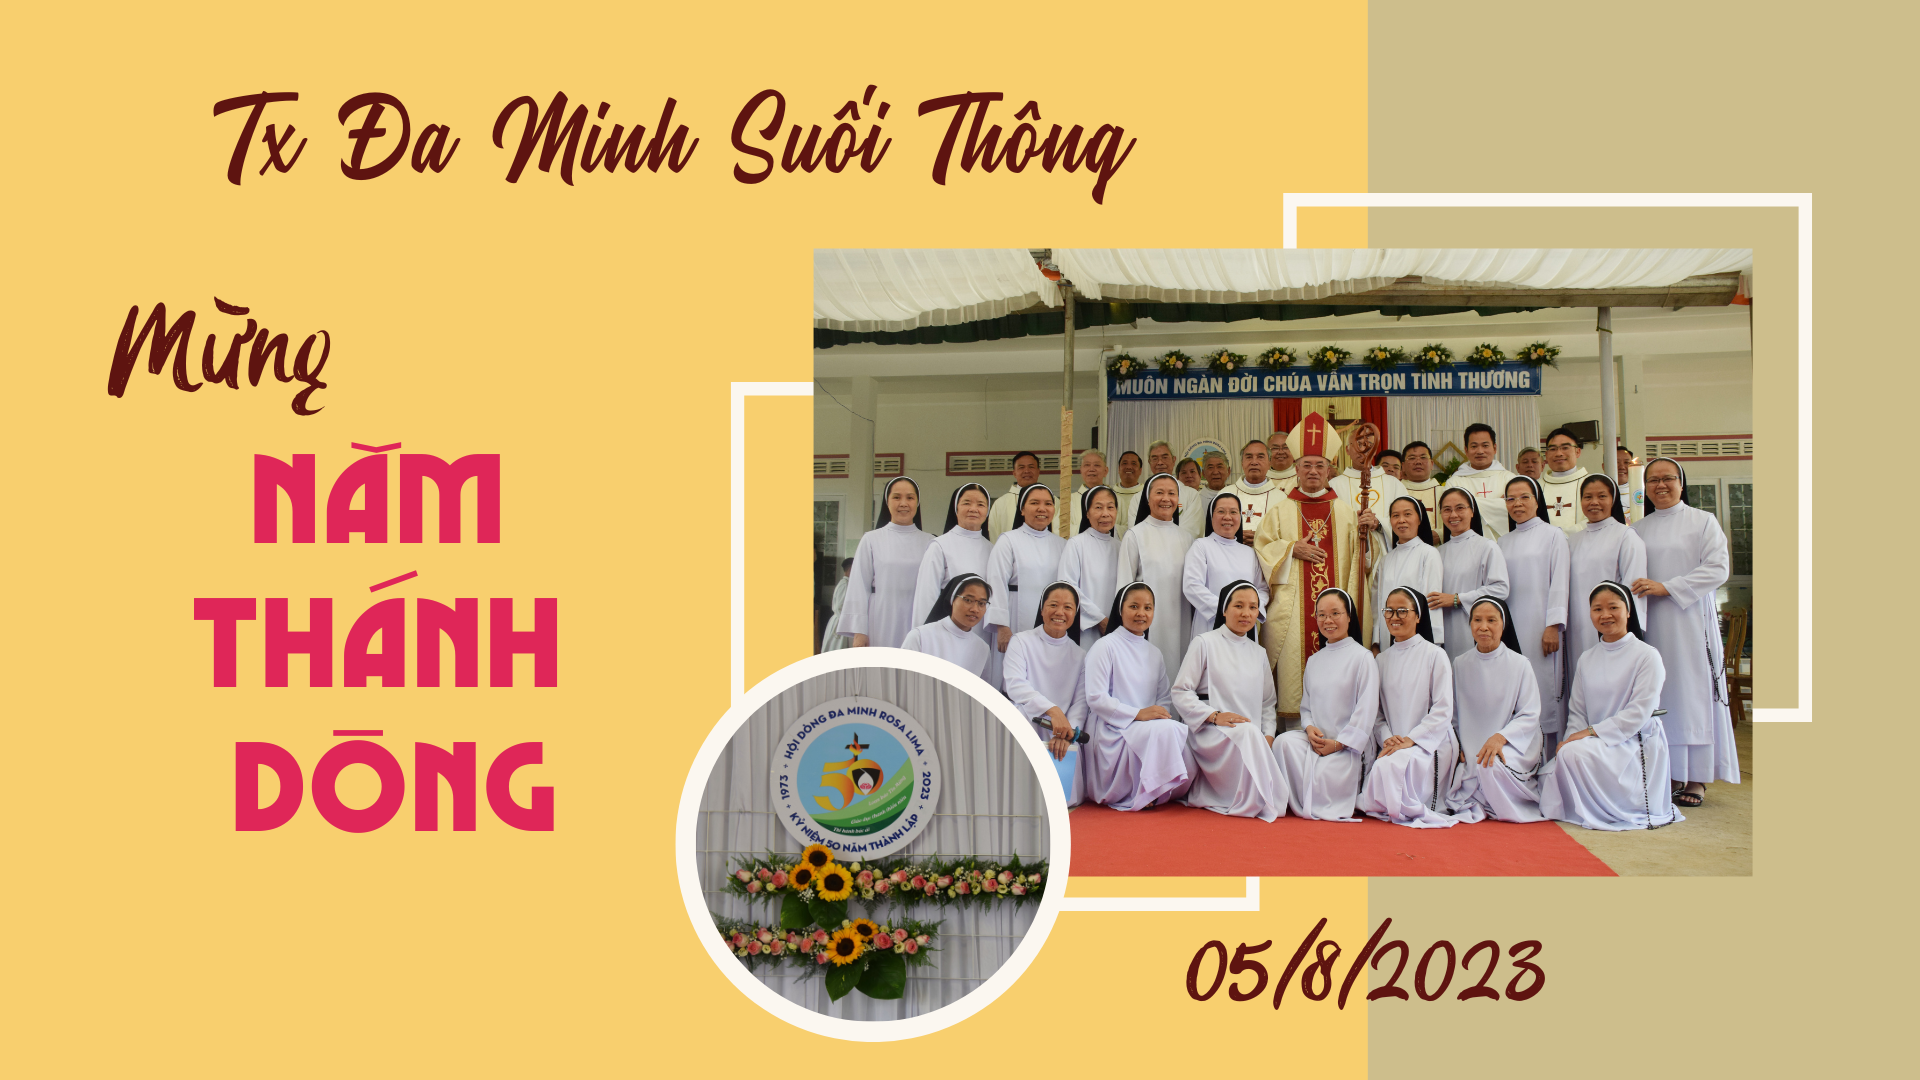 Hình ảnh Thánh Lễ mừng Năm Thánh Hội dòng tại Tu xá Đa Minh - Suối Thông - Ngày 05/8/2023